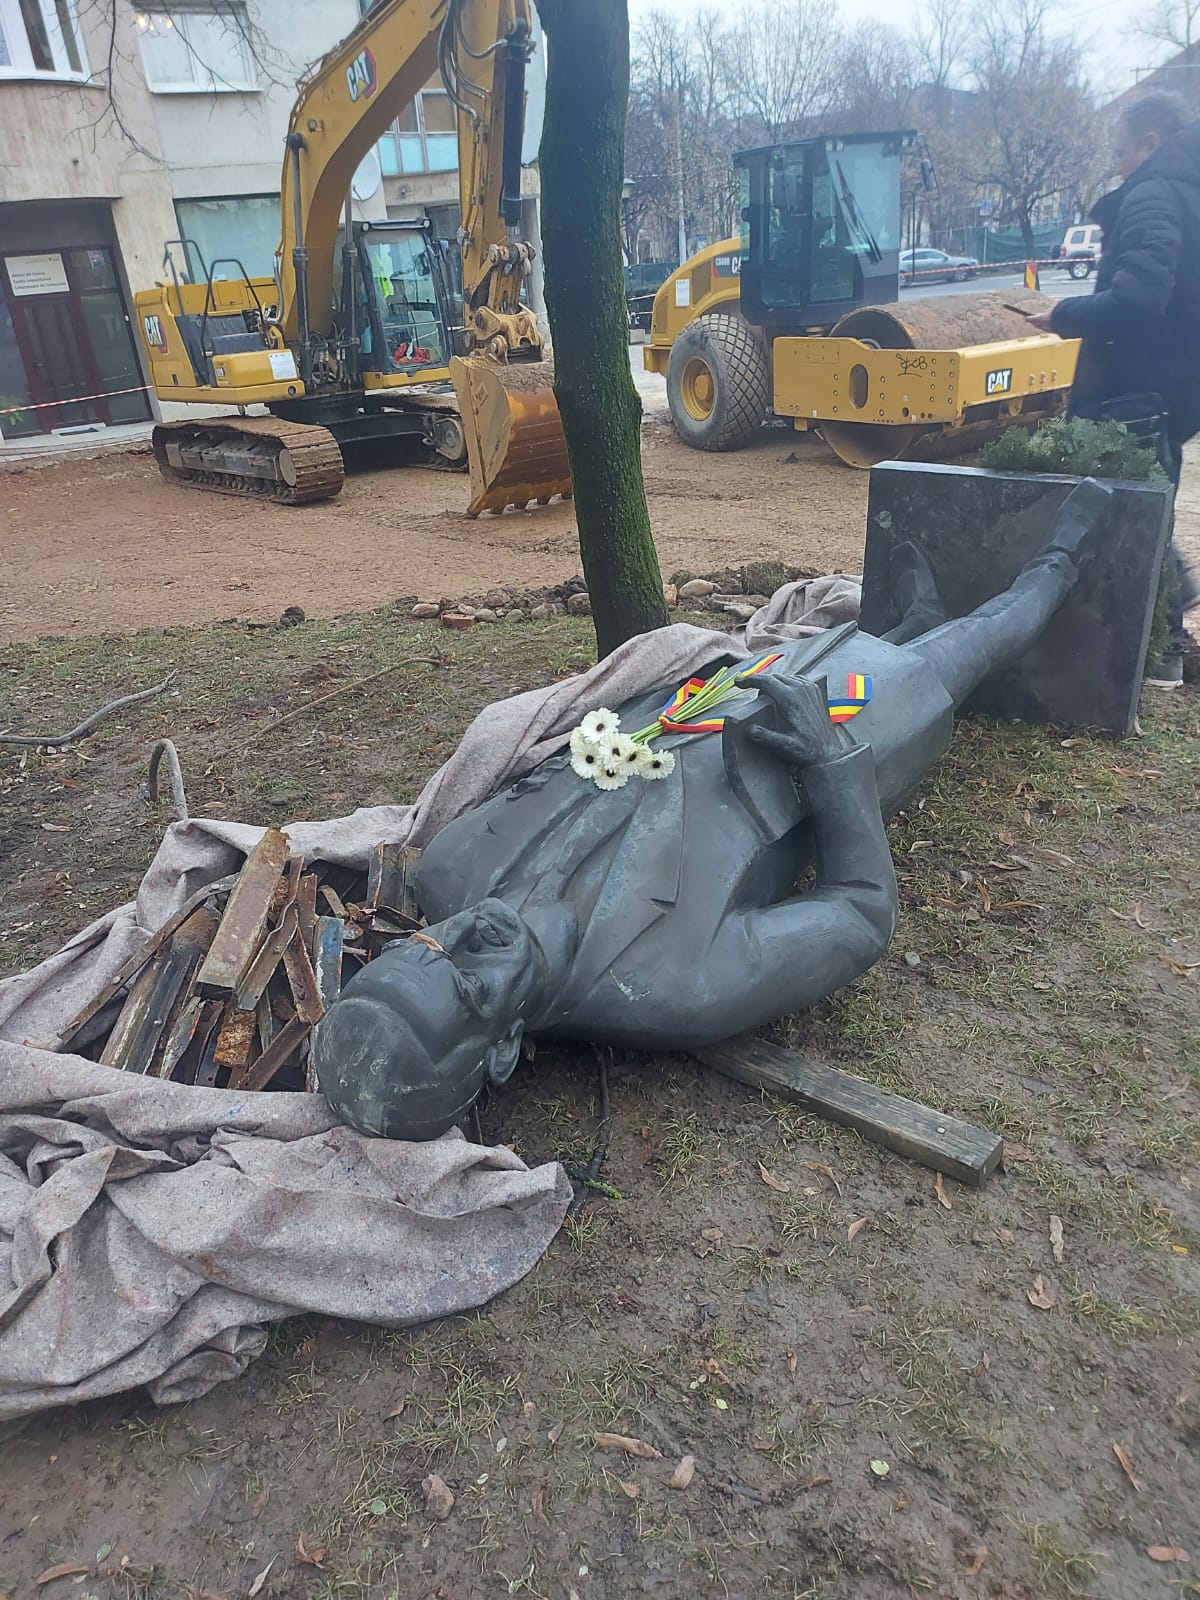 Foto Cluj. Emil Boc, reacție după ce statuia lui Iuliu Maniu a fost dată jos cu excavatorul. ”Statuia a fost luată de pe soclu și așezată lângă zidul bastionului. La fel s-a procedat cu statuile lui Eminescu și Blaga” 1